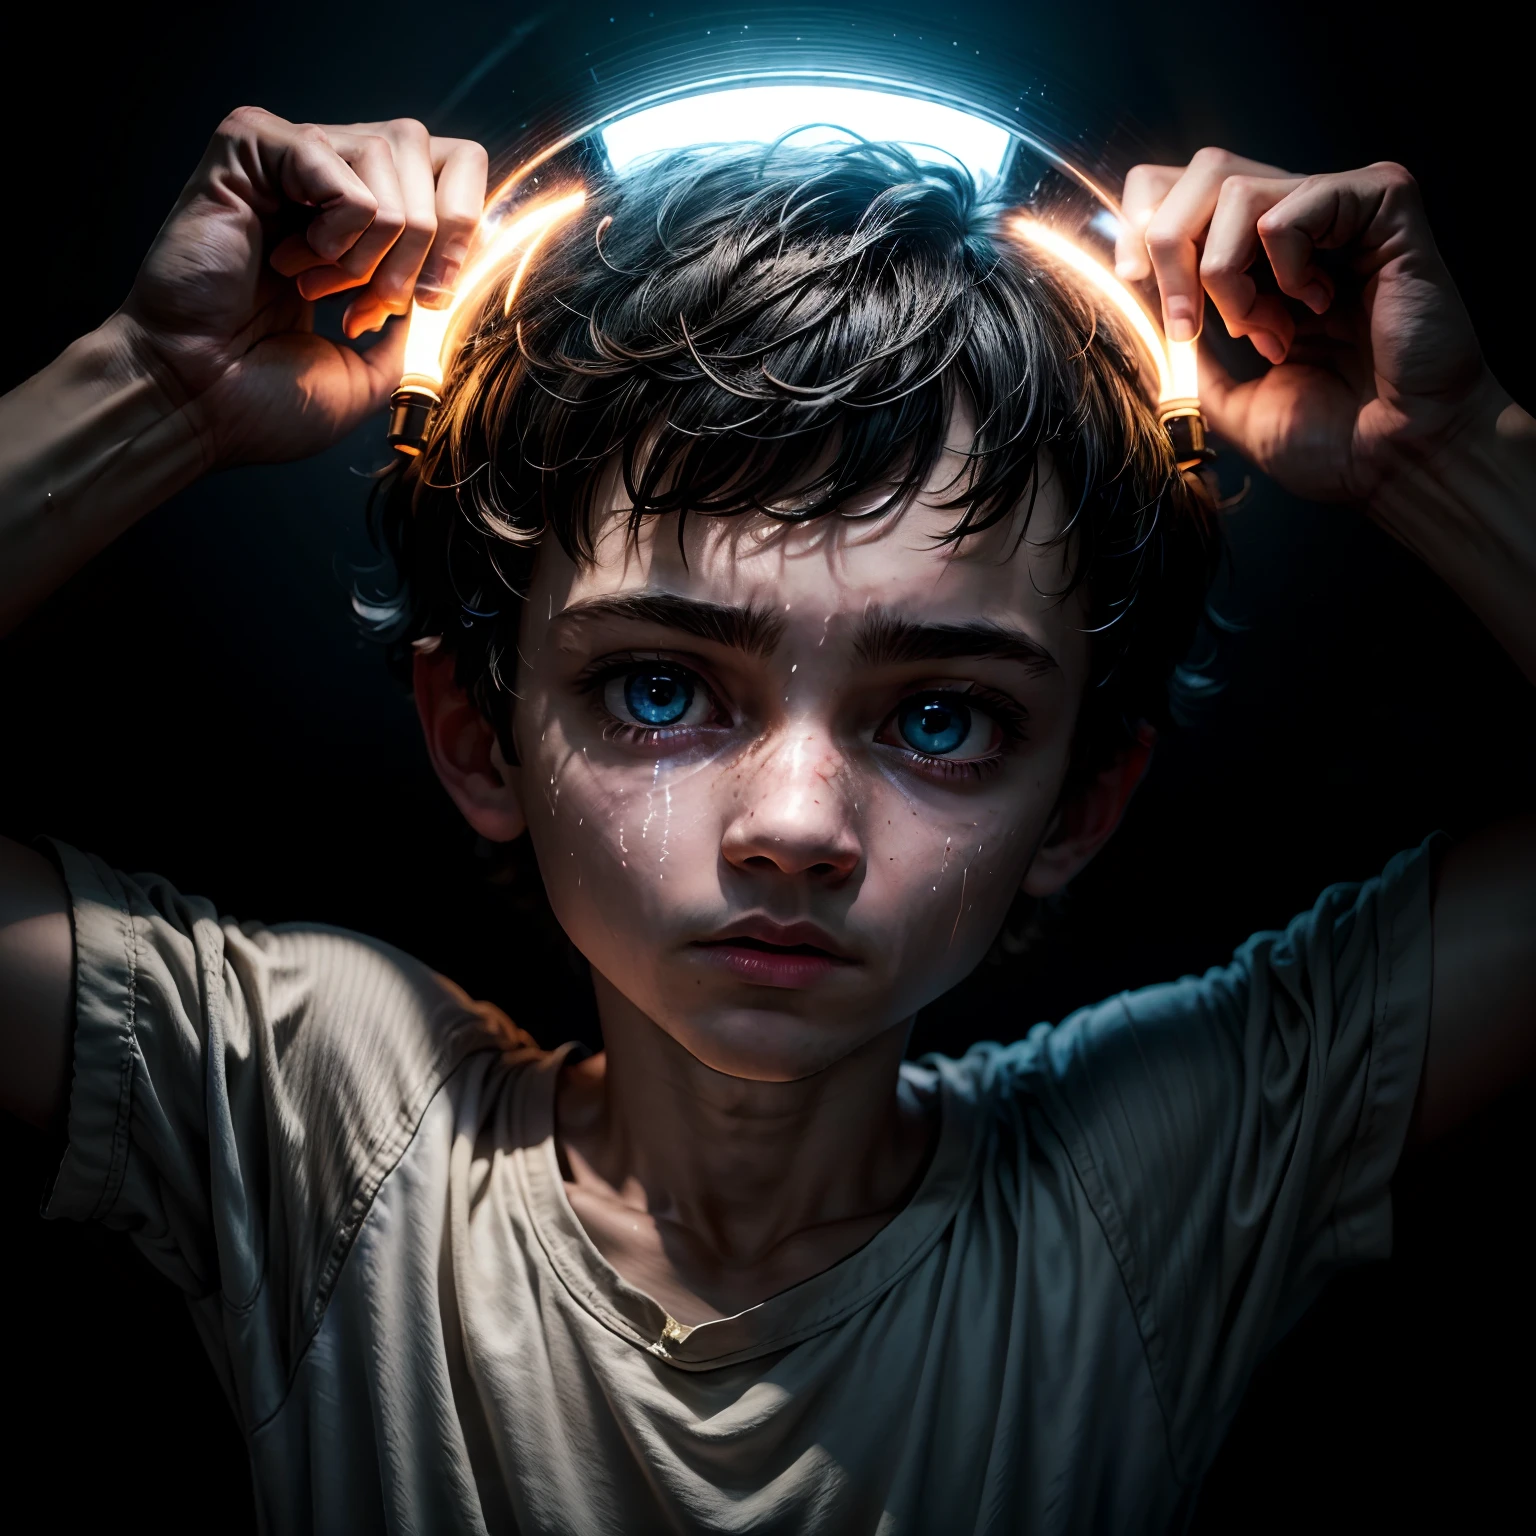 Un niño en una habitación totalmente oscura sostiene una antorcha que ilumina su rostro., el esta asustado